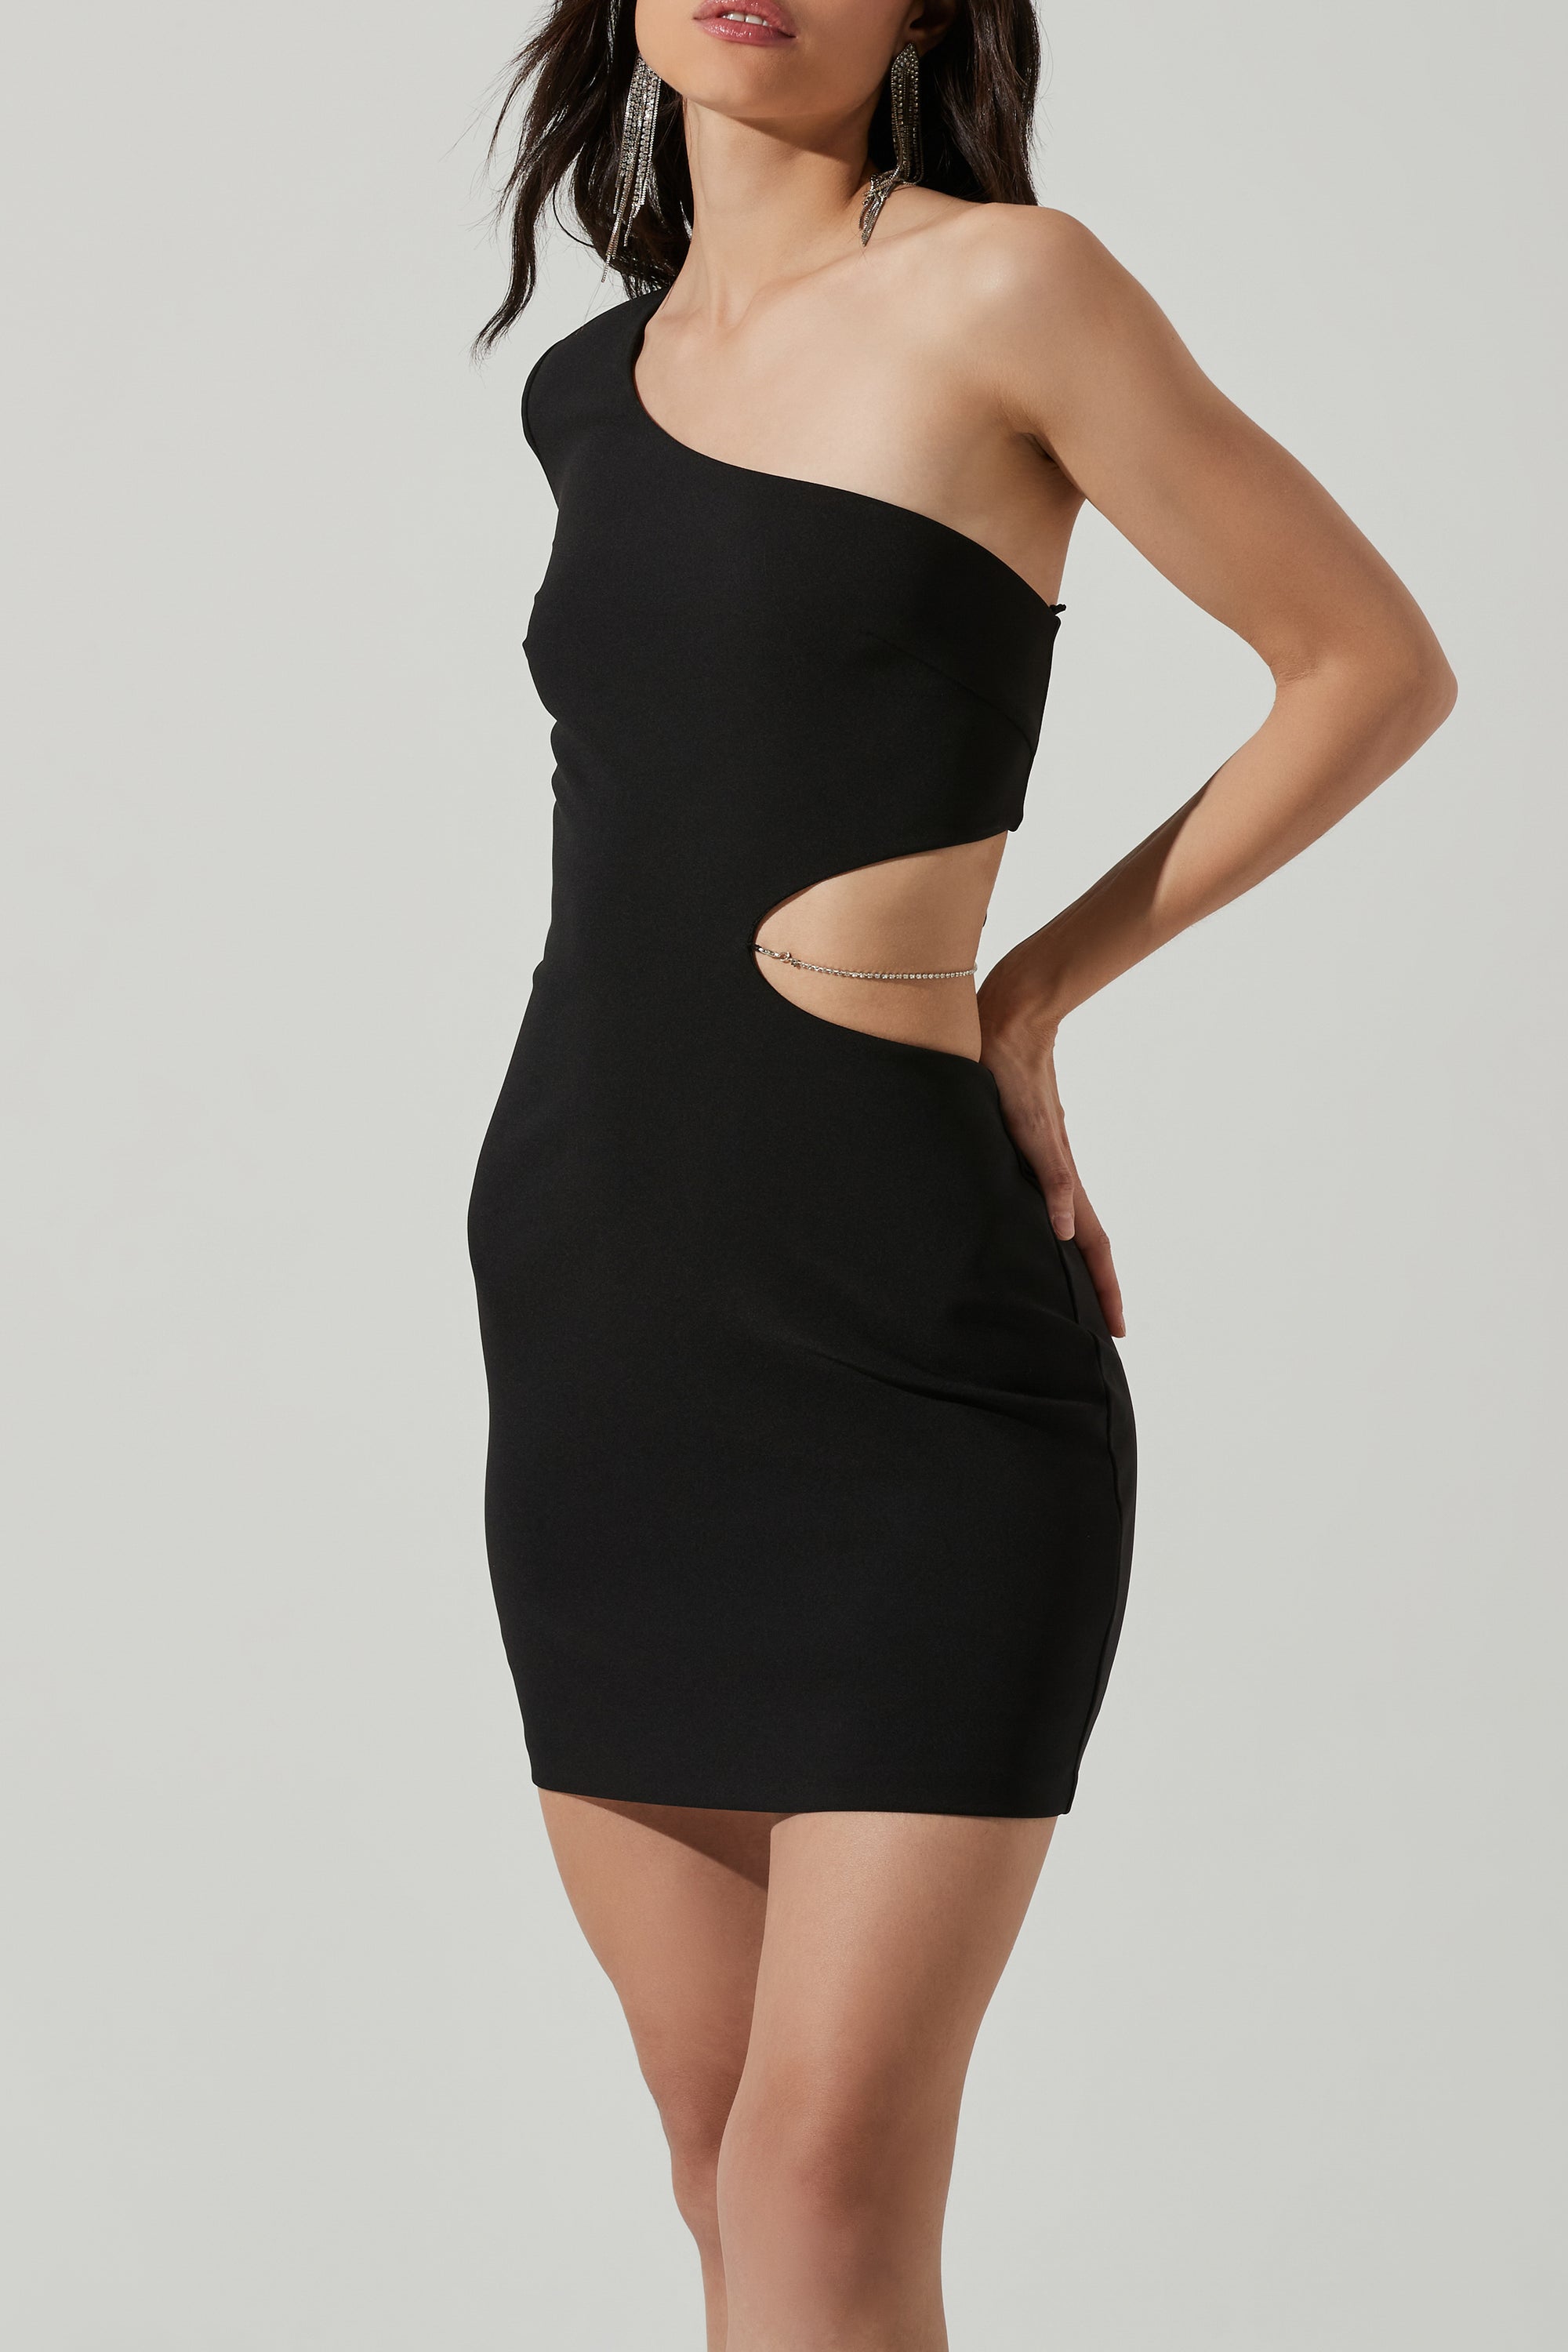 Lavina One Shoulder Mini Dress in Black